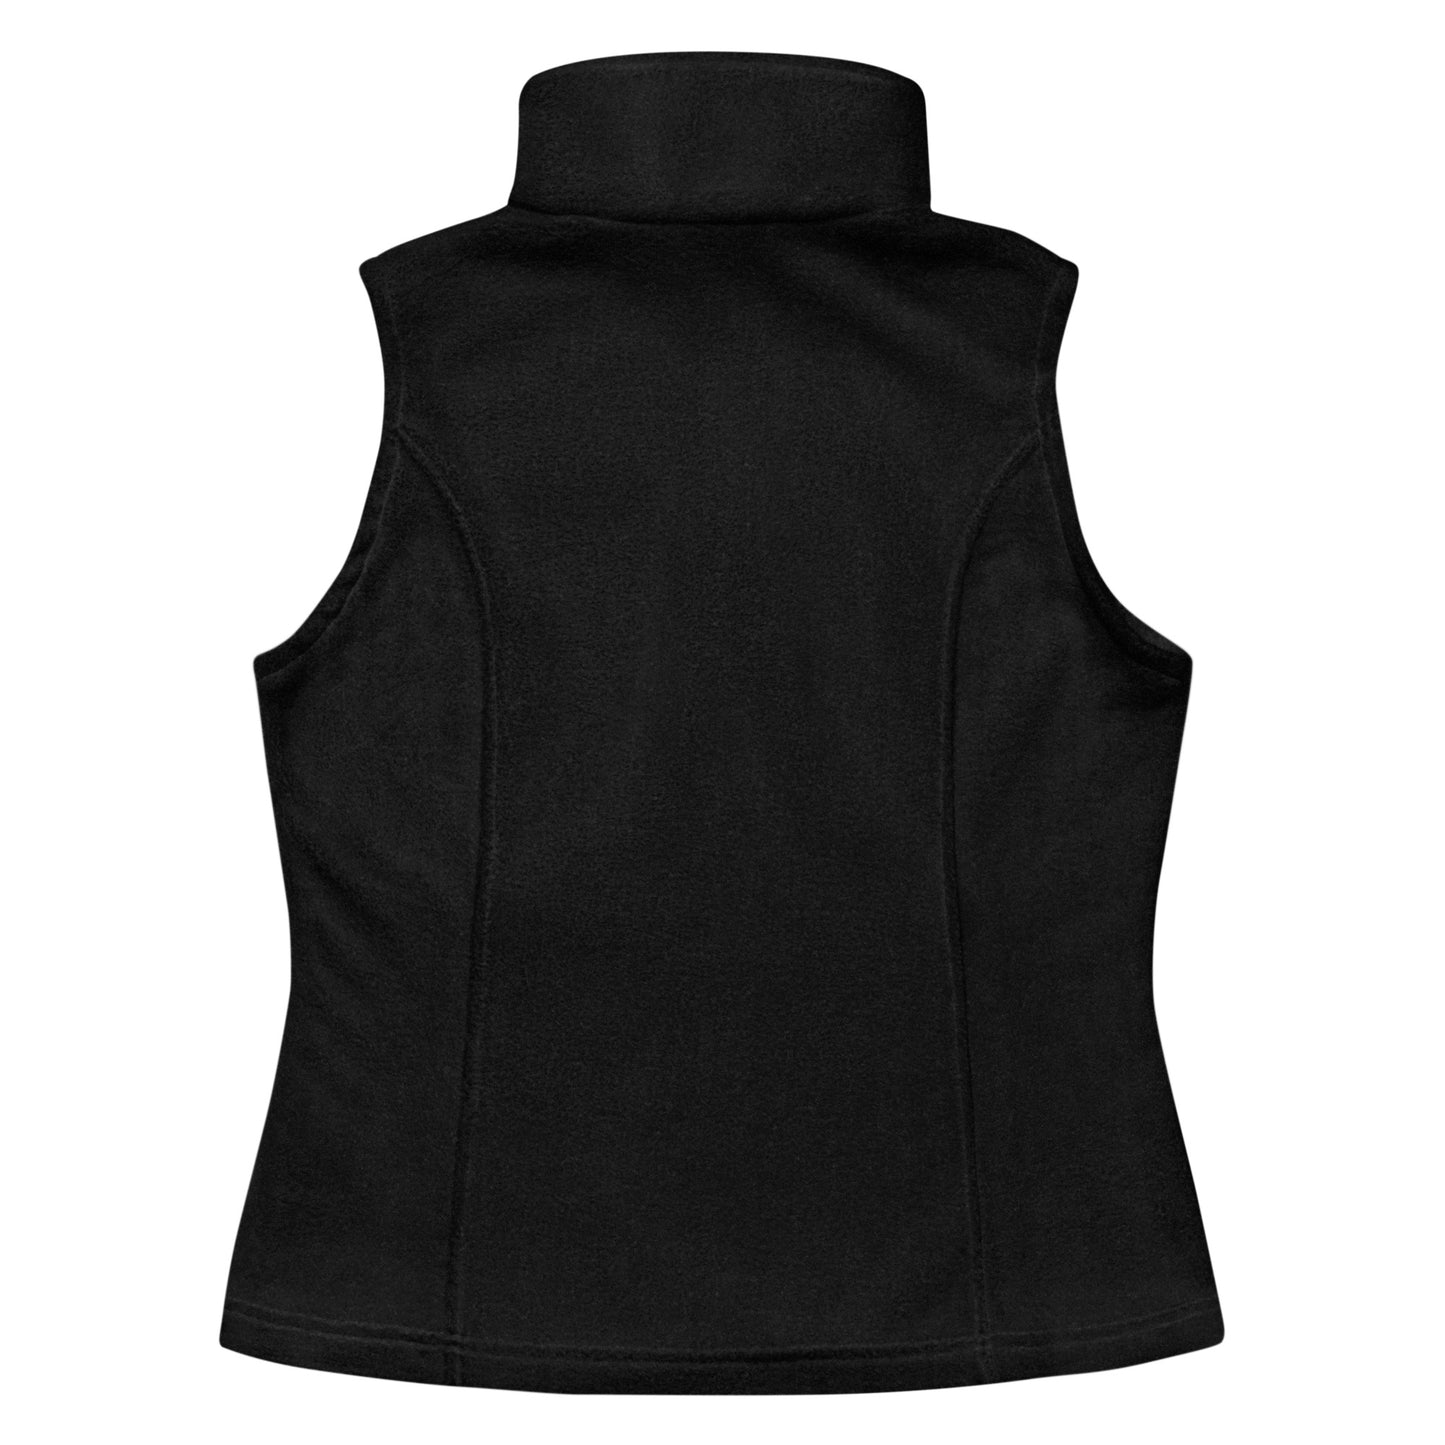 Hawks- Women’s Columbia fleece vest